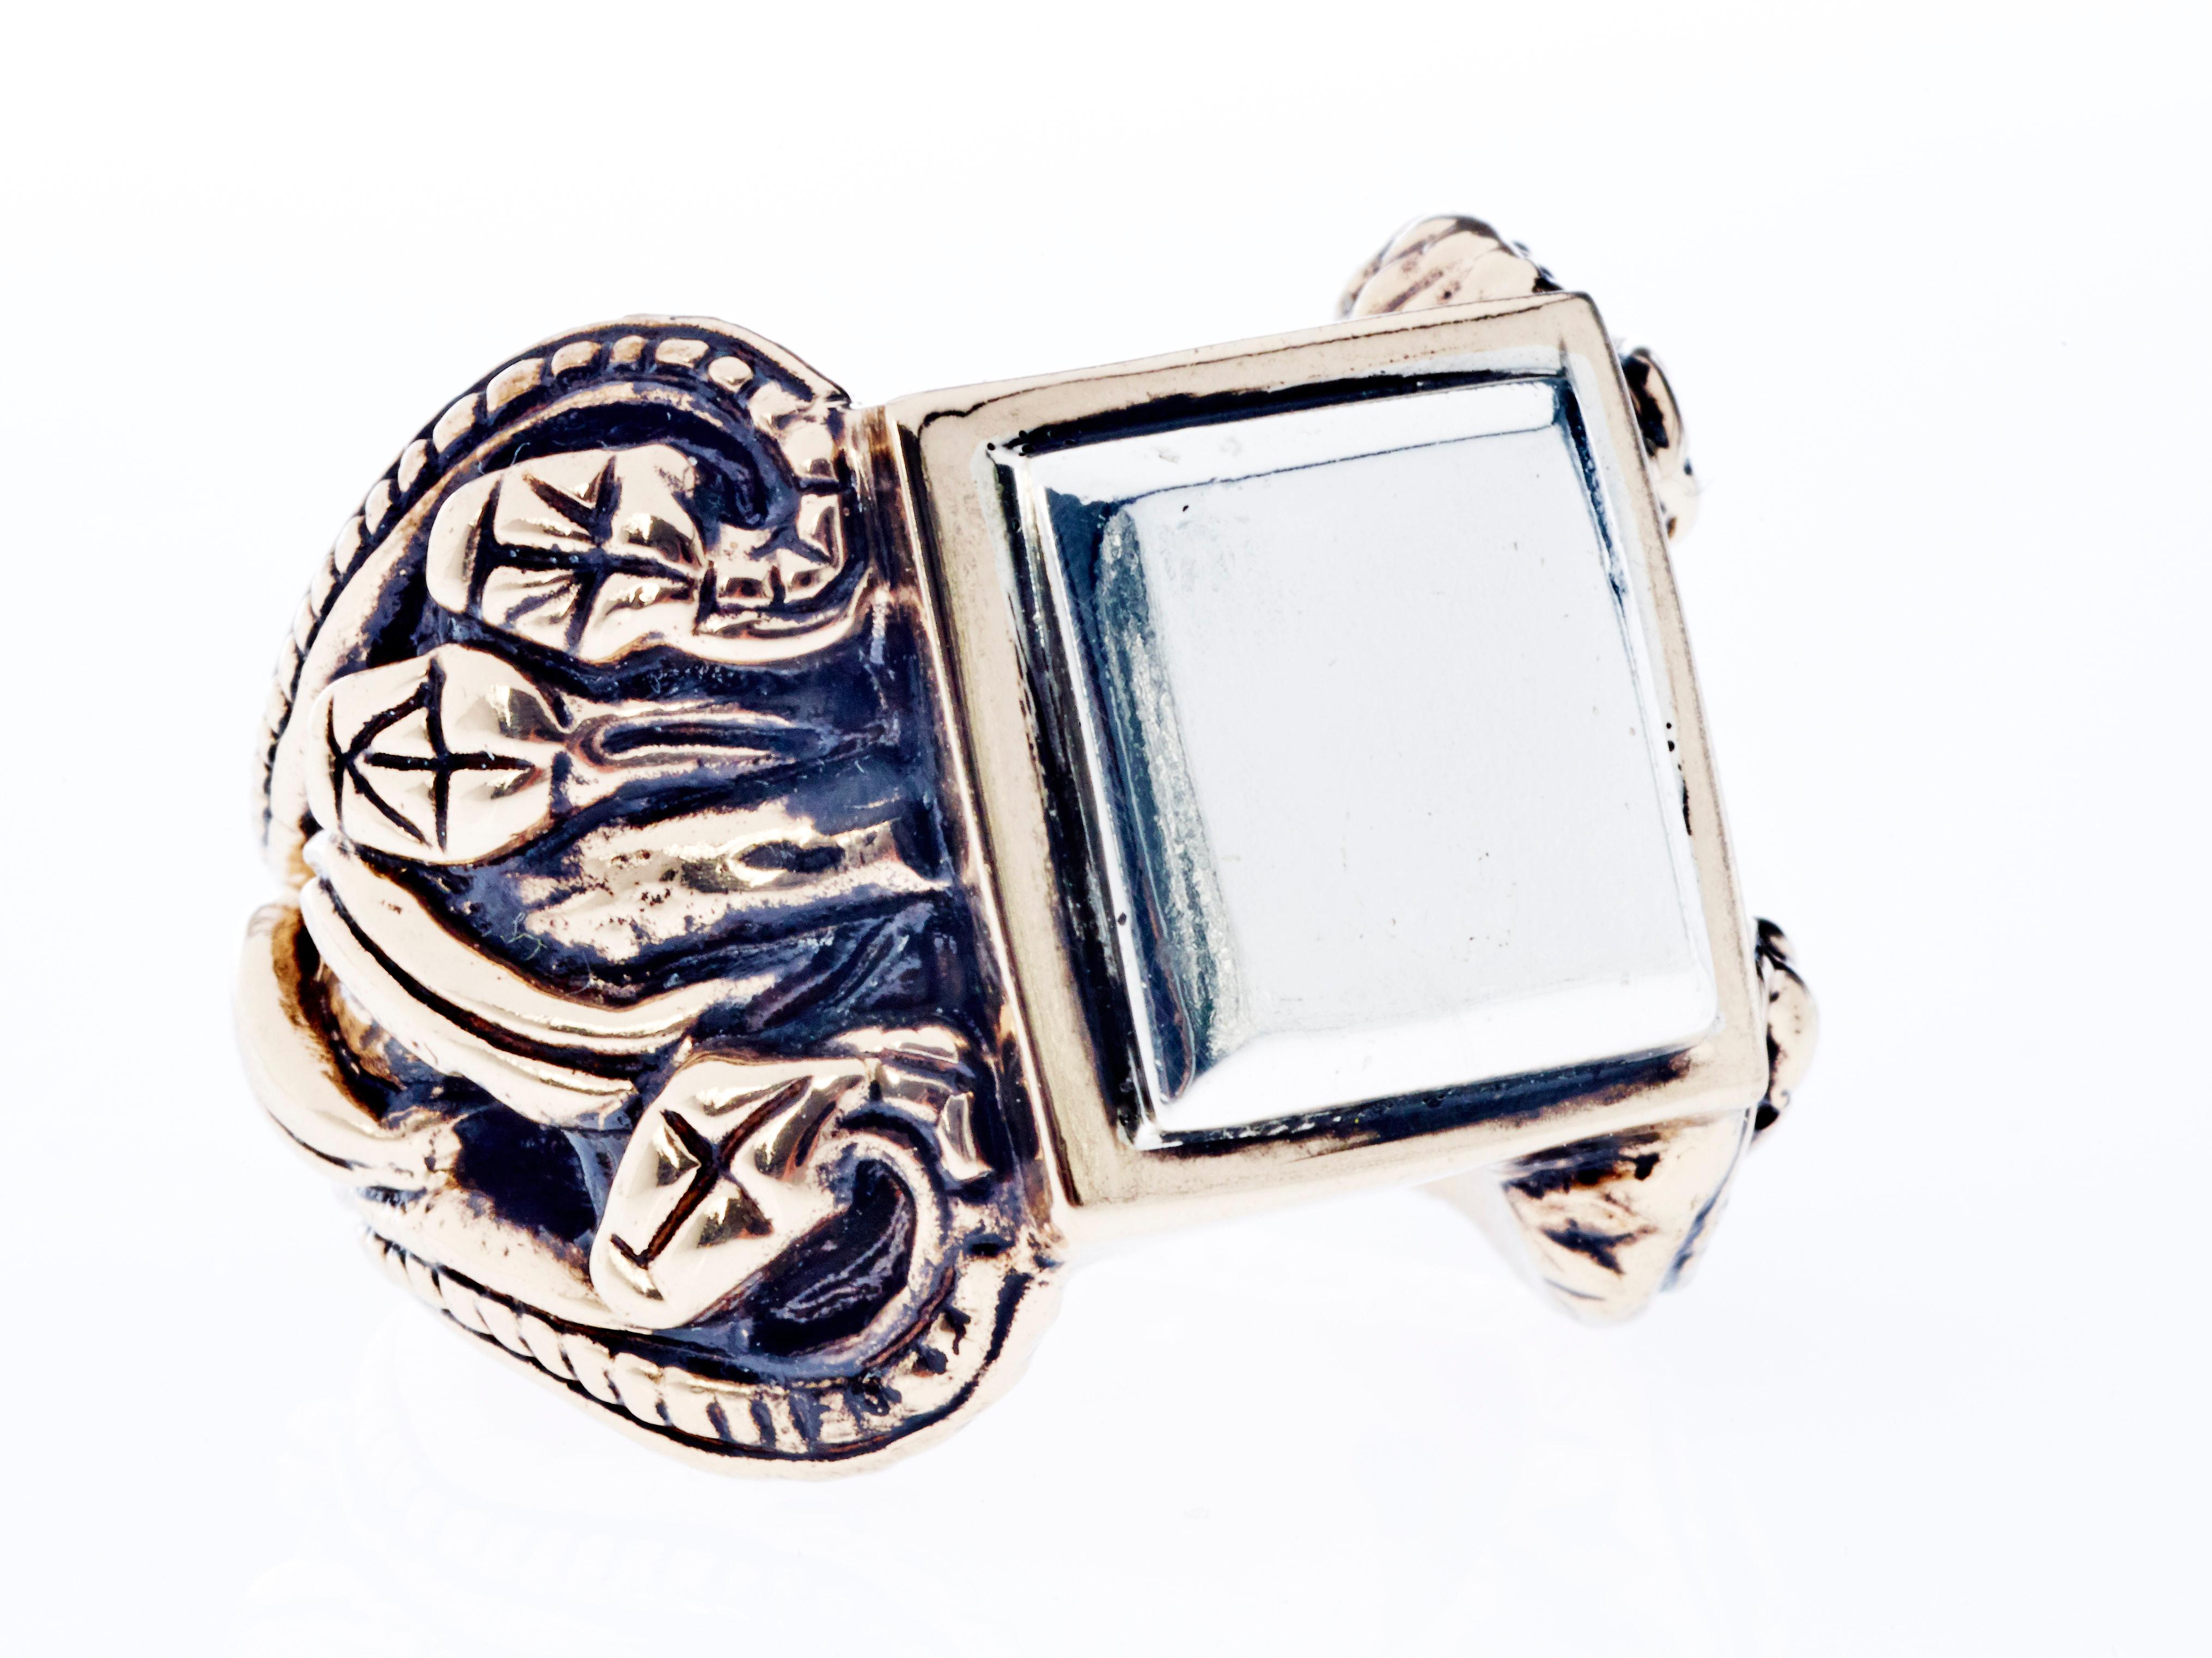 Crest Schlange Ring viktorianischen Stil antik Silber Bronze J Dauphin

Schmuckring J DAUPHIN aus Bronze und Silber mit antiker Beschichtung.

Die Schlange ist eines der ältesten und am weitesten verbreiteten mythologischen Symbole. 
Historisch